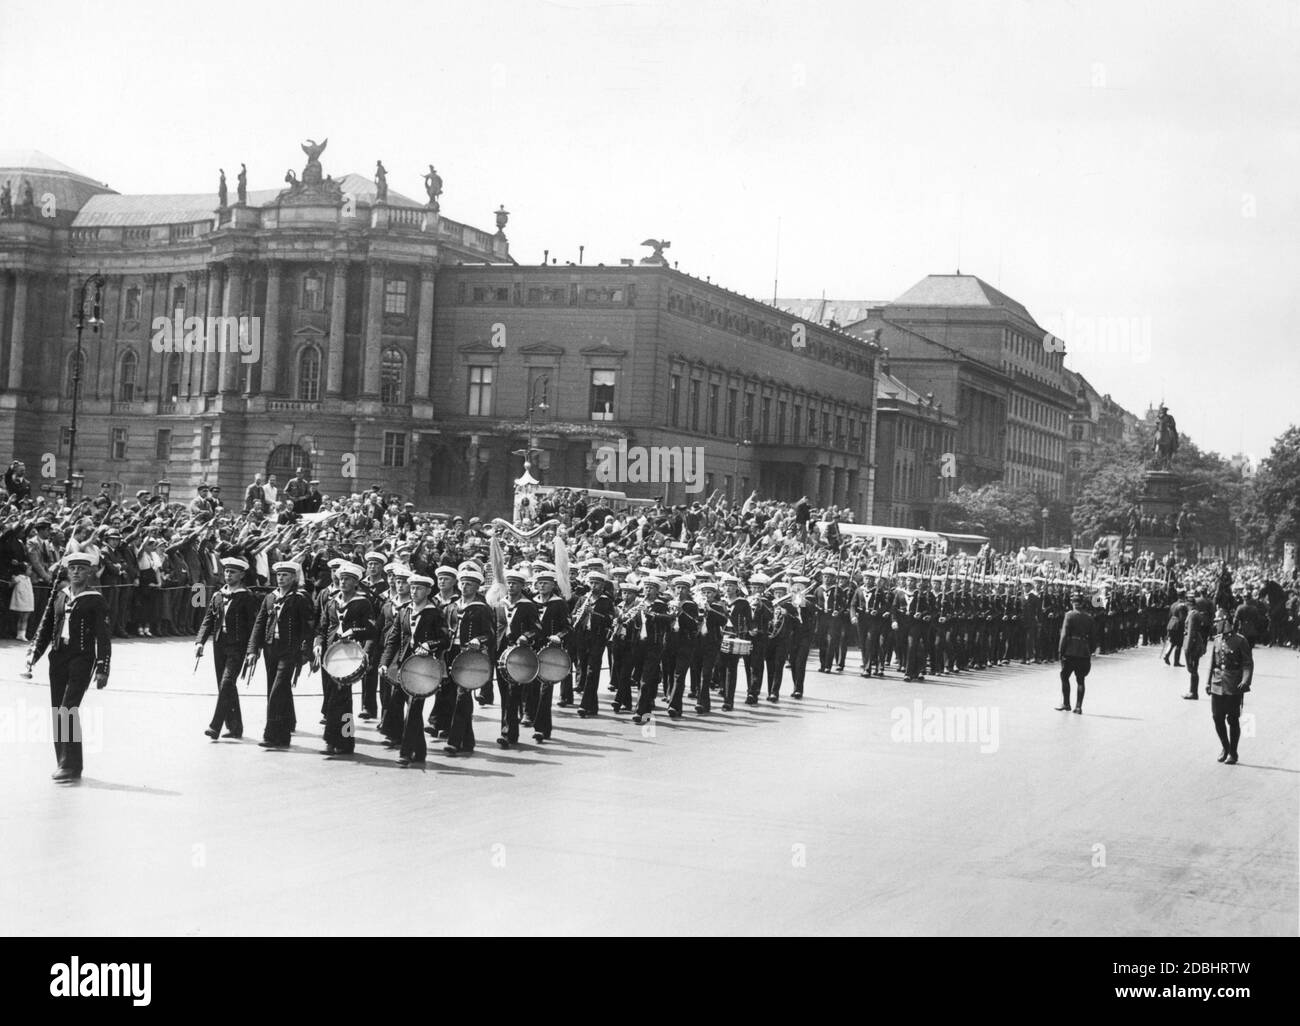 Una banda di marching del Reichsmarine, seguita da molti altri marinai, attraversa la strada Unter den Linden a Berlino nel 1933. La gente al lato della strada esegue il saluto nazista. Sullo sfondo si trovano l'Alte Bibliothek (a sinistra), l'Alte Palais (a destra) e la statua equestre di Federico il Grande (a destra). Foto Stock